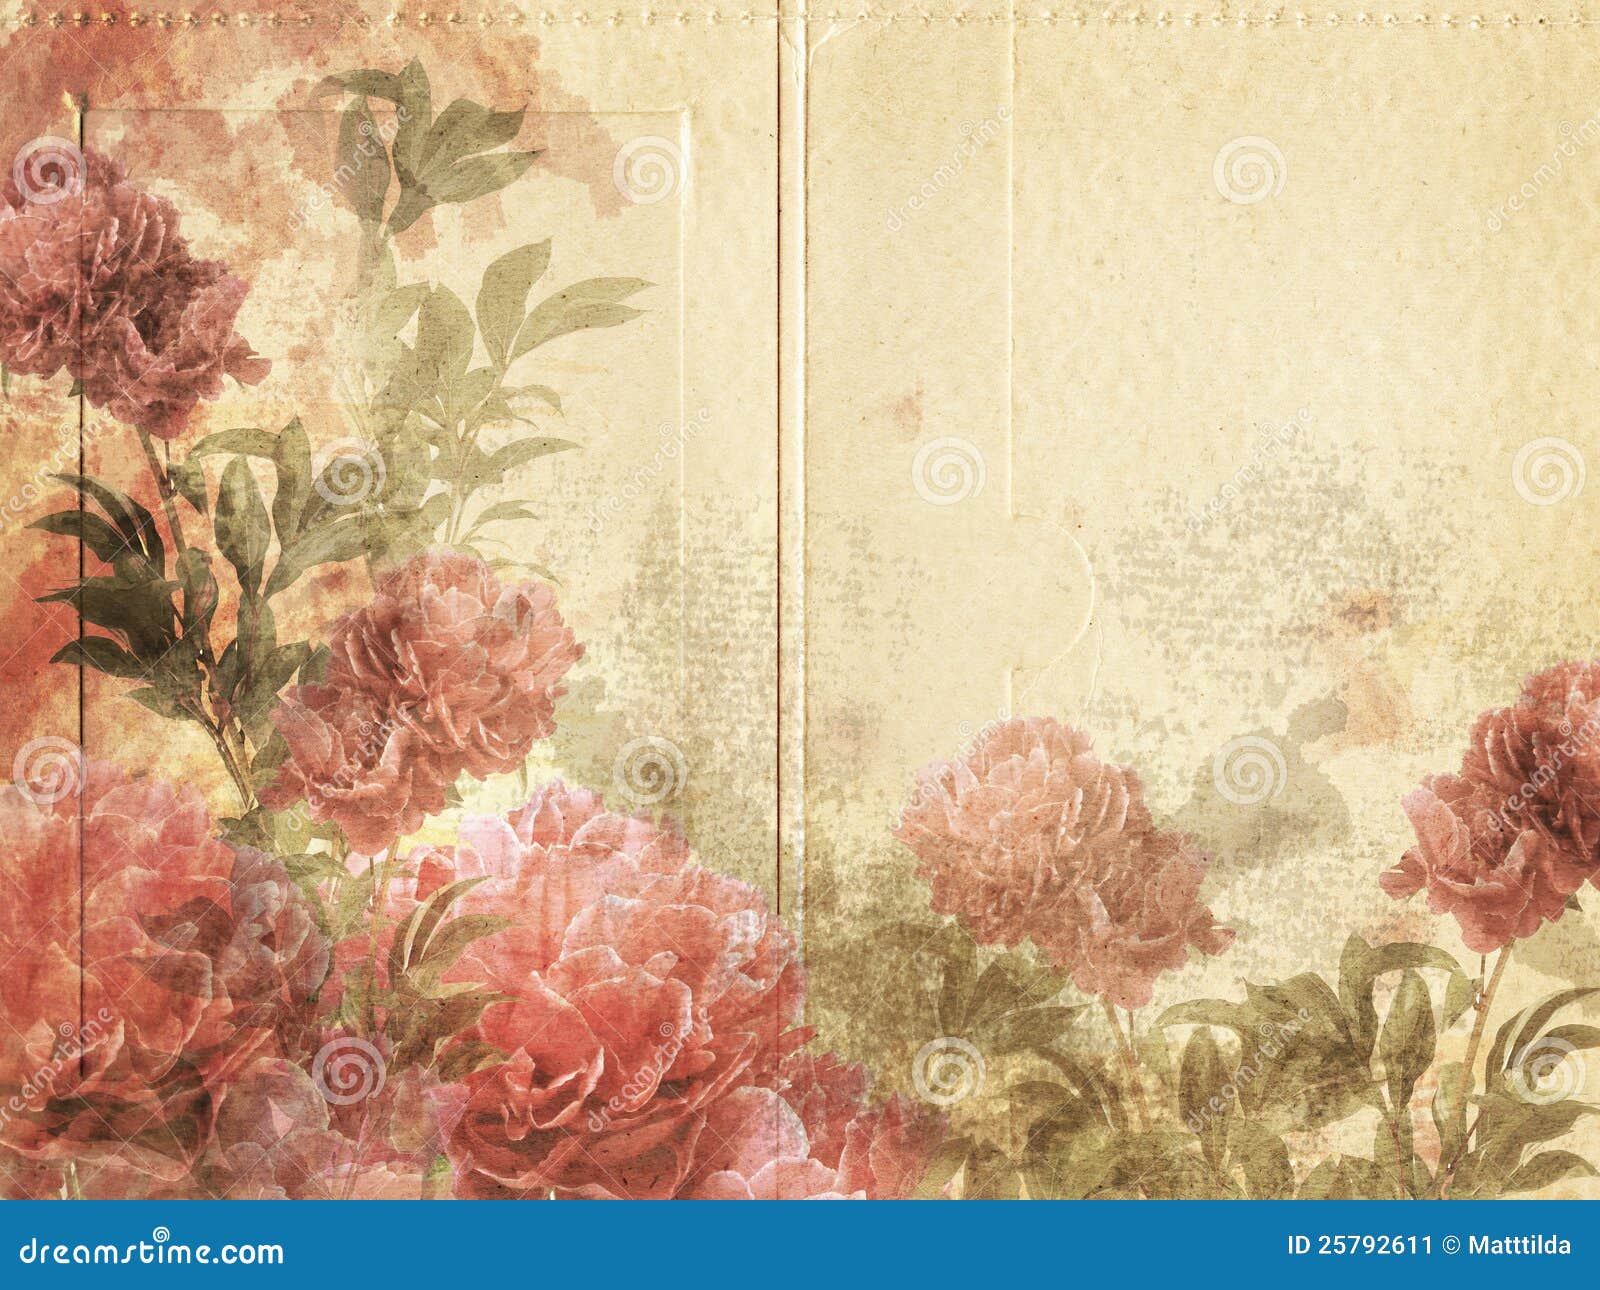 Vintage Flower Background stock image. Image of blossom - 25792611